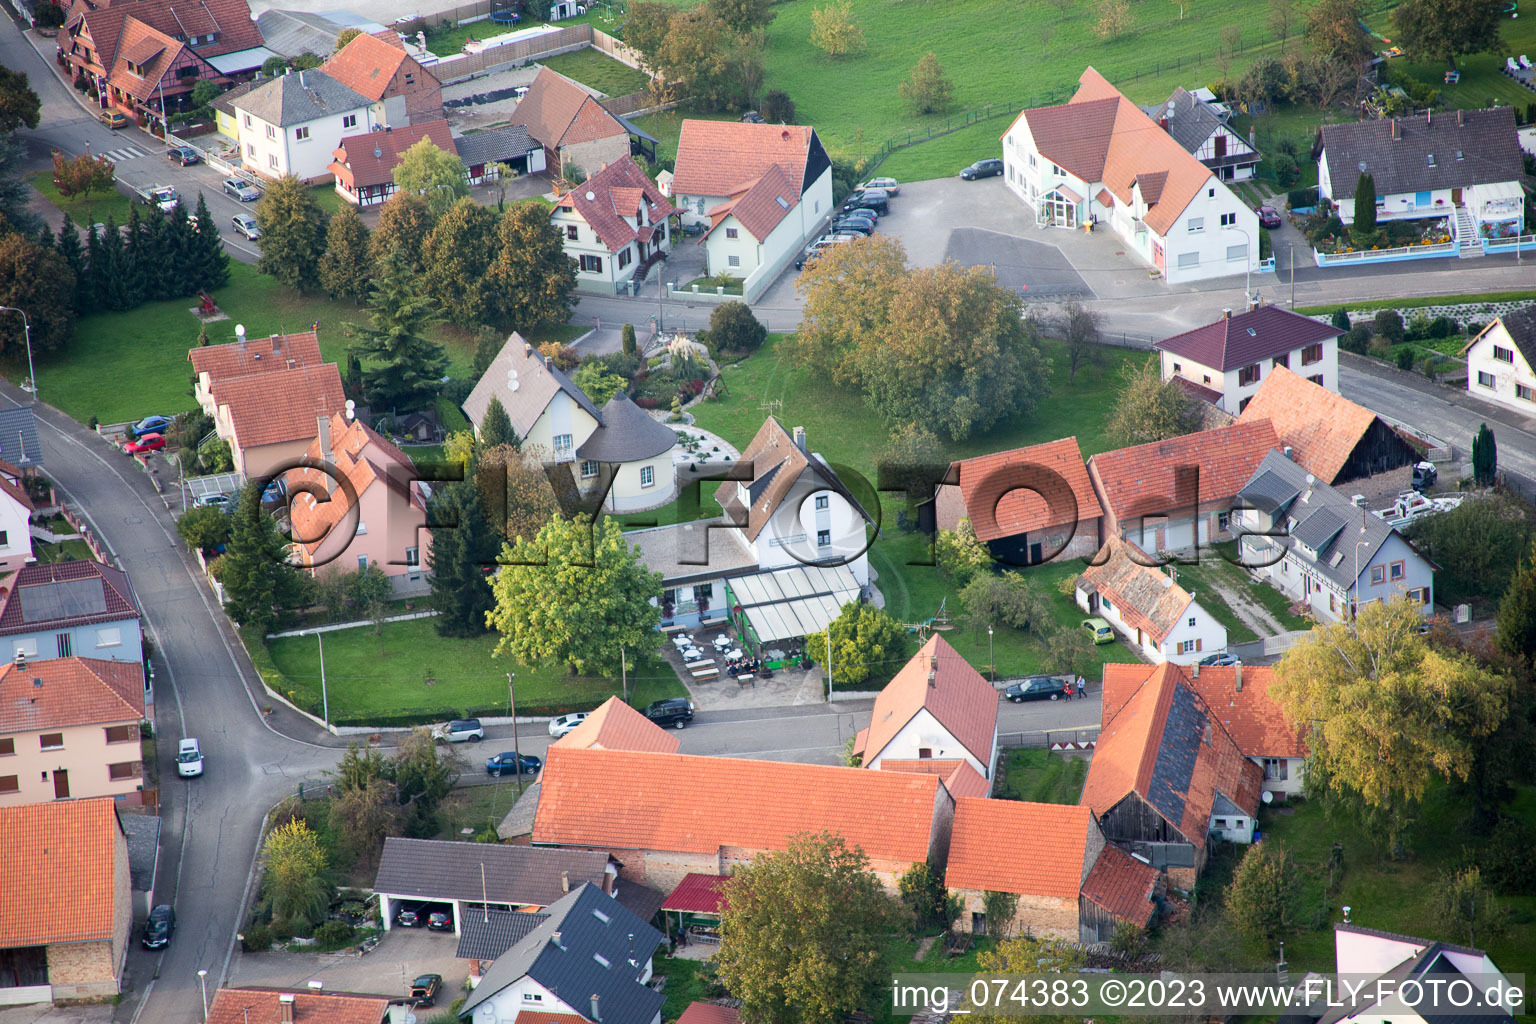 Neuhaeusel im Bundesland Bas-Rhin, Frankreich aus der Luft betrachtet